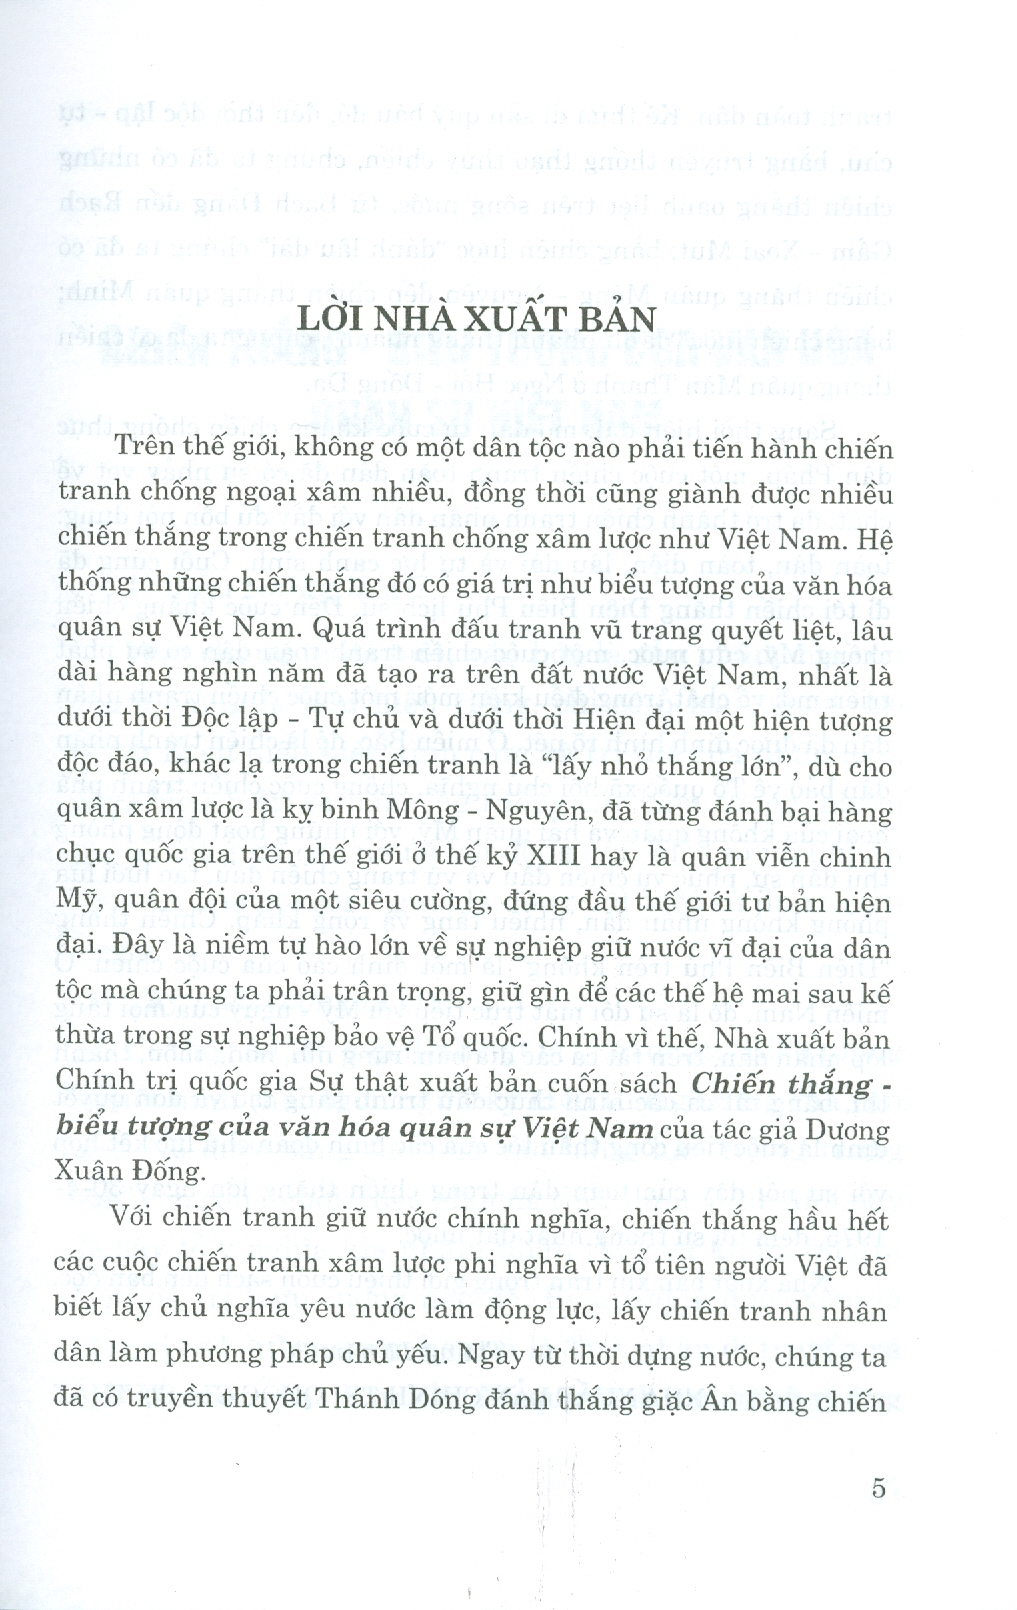 CHIẾN THẮNG - Biểu Tượng Của Văn Hóa Quân Sự Việt Nam